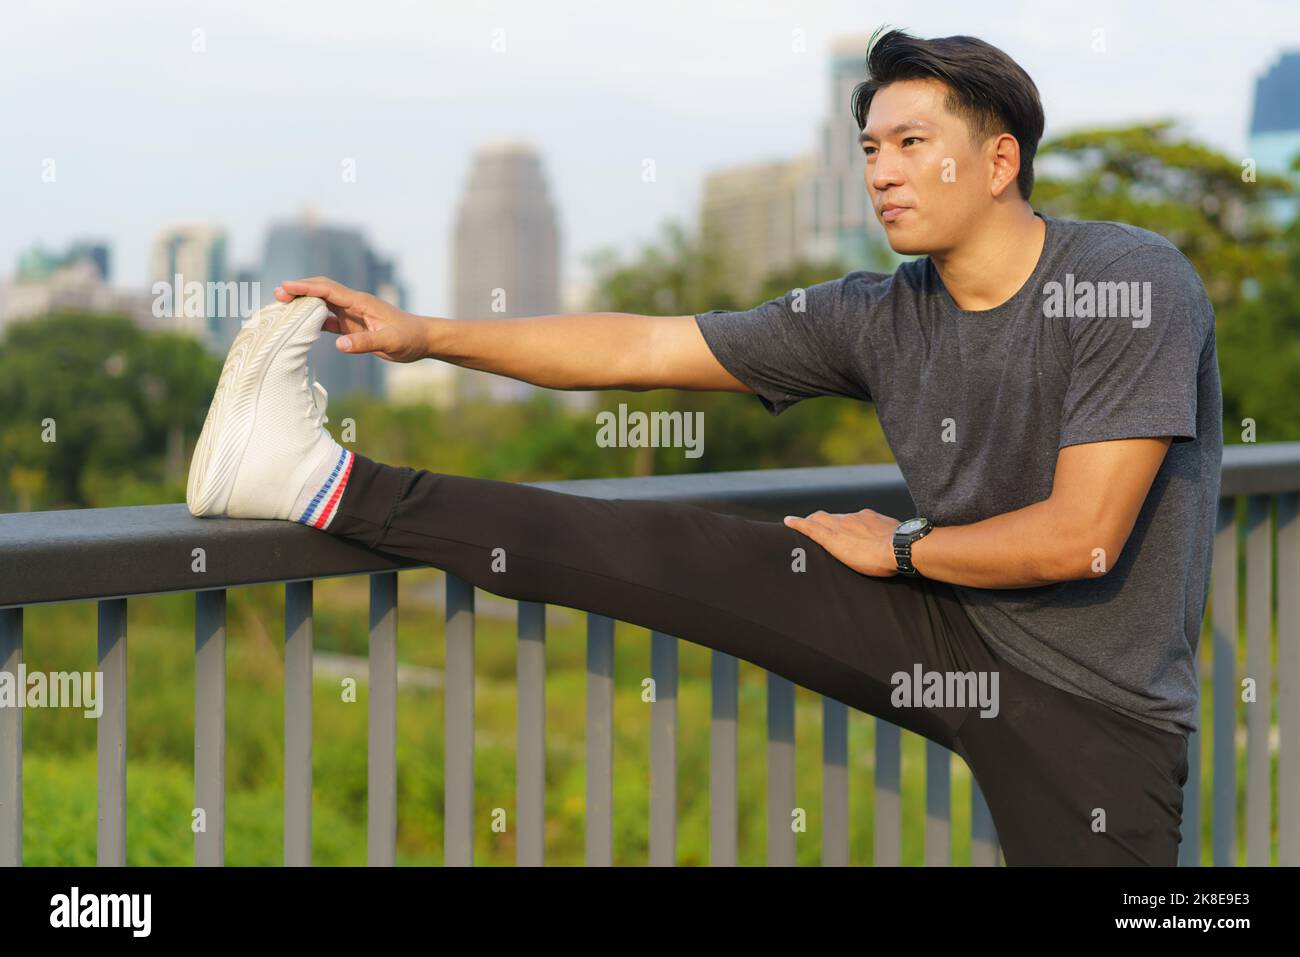 Sports urbains - un jeune homme asiatique se réchauffe avant de courir en ville pendant une belle journée d'été Banque D'Images